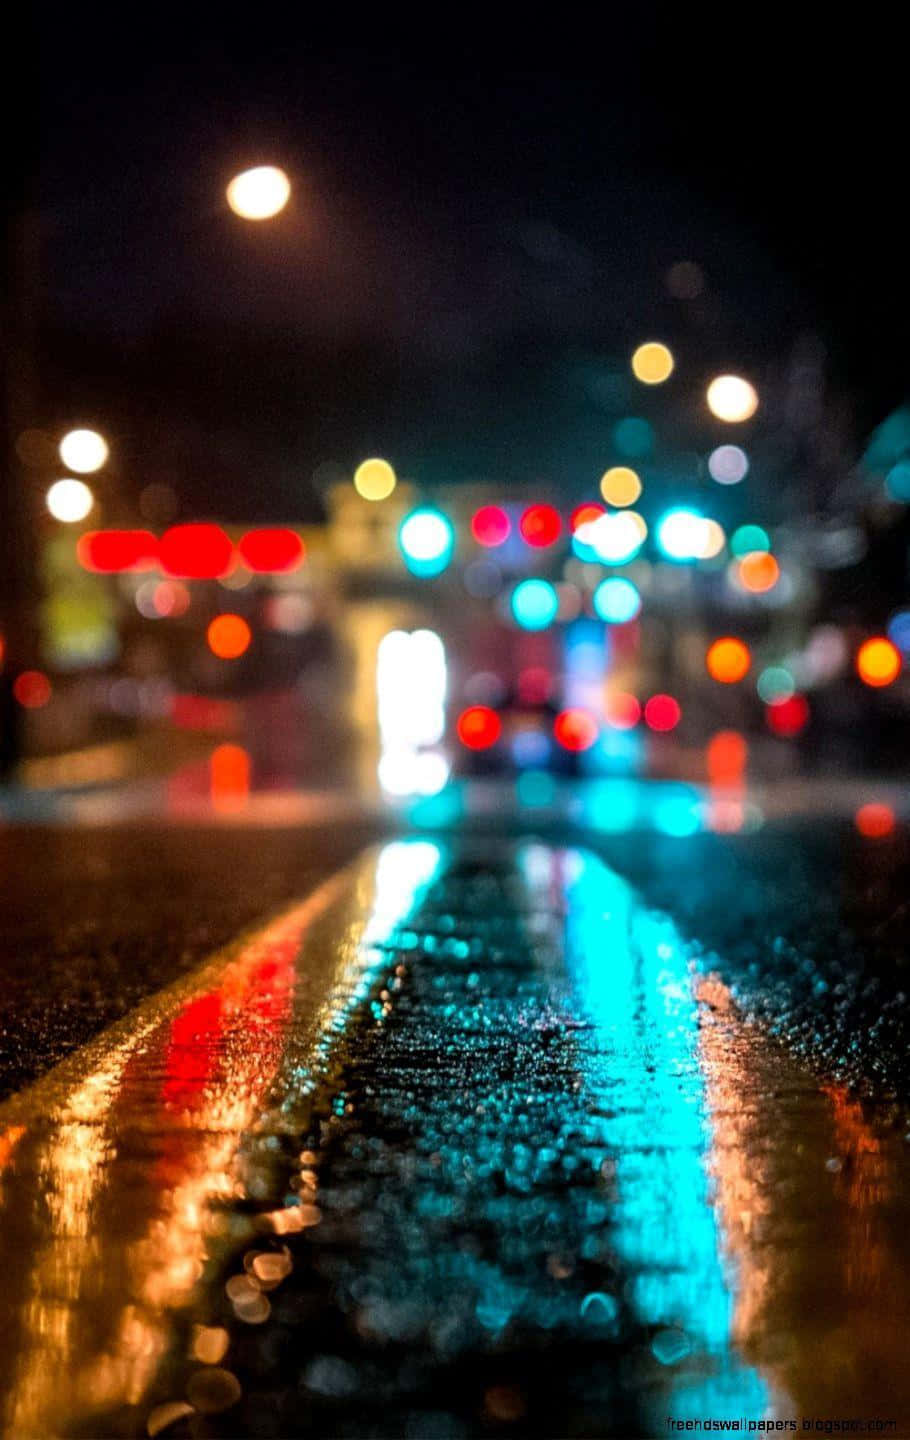 En gade med lys og regn på den. Wallpaper